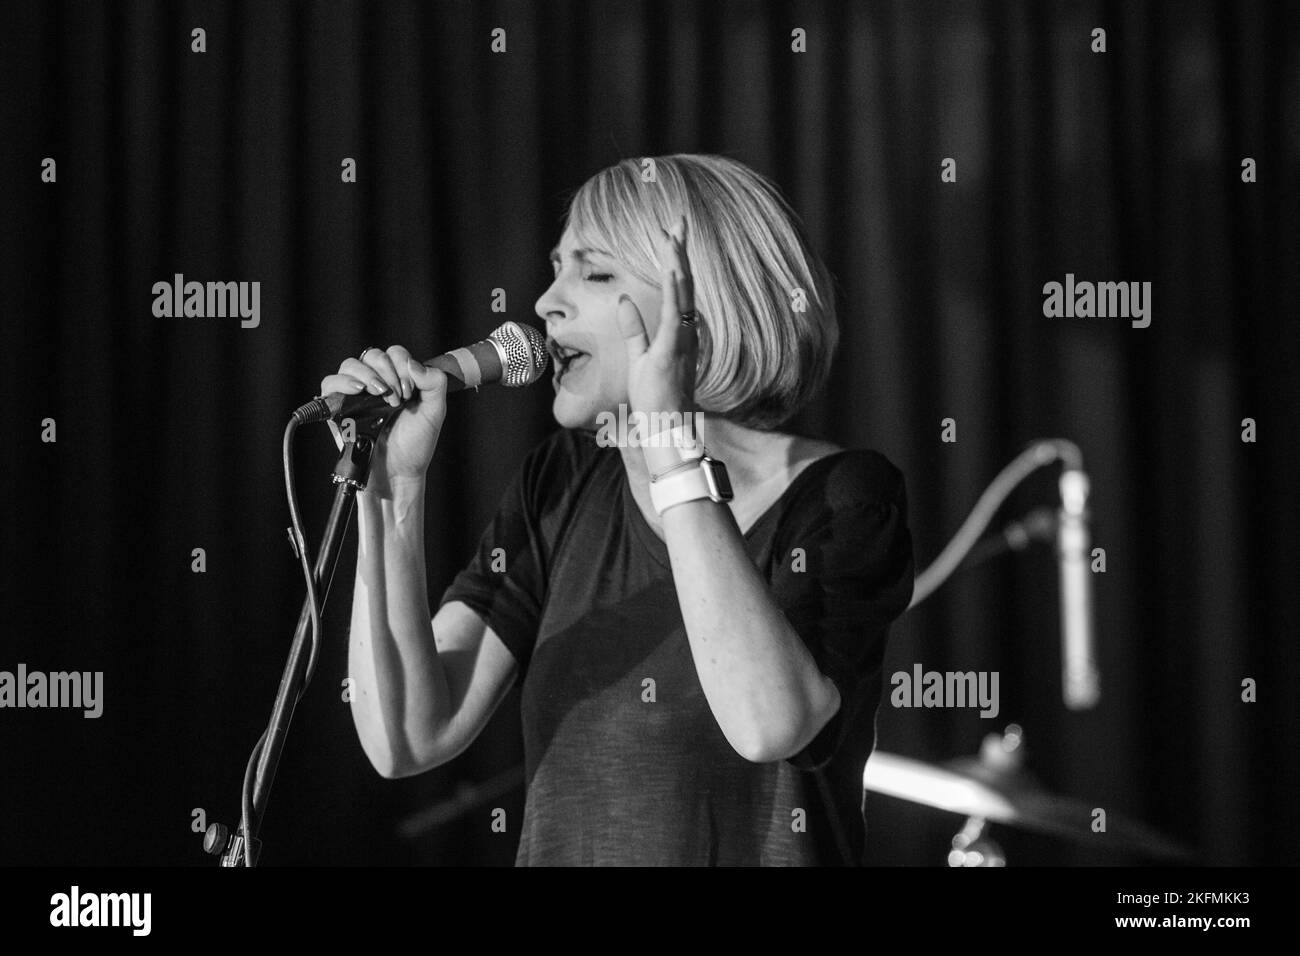 Andrea Parker, chanteuse de Melys - concert à l'Aquarium, Lowestoft, Suffolk - le 9 décembre 2016 Banque D'Images